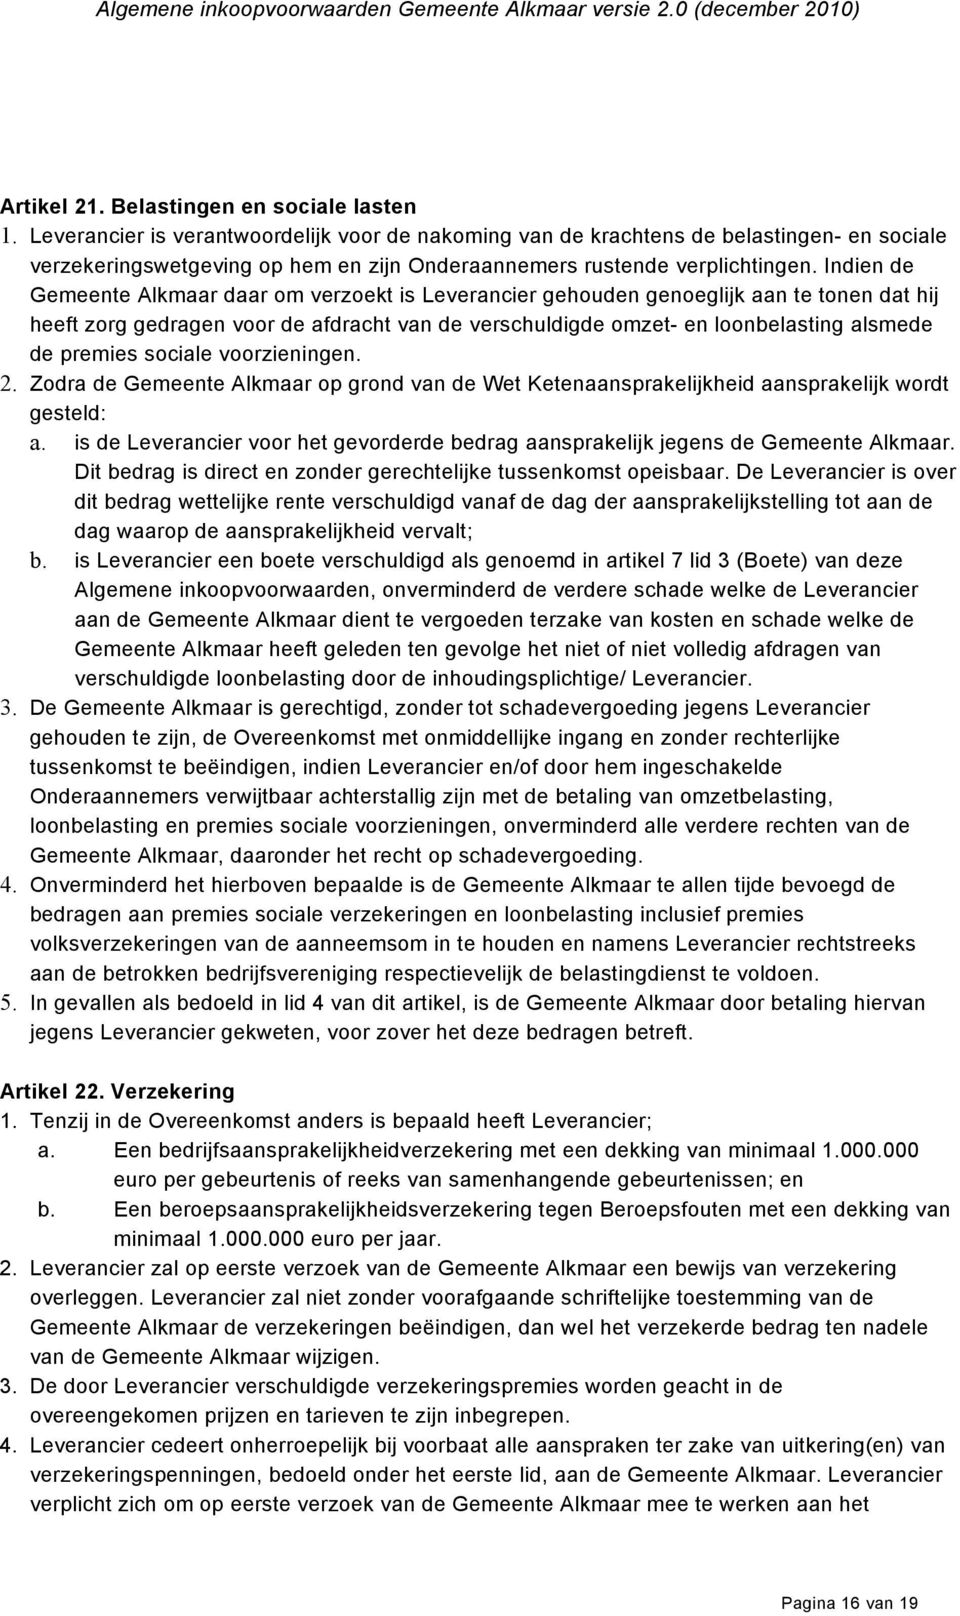 Indien de Gemeente Alkmaar daar om verzoekt is Leverancier gehouden genoeglijk aan te tonen dat hij heeft zorg gedragen voor de afdracht van de verschuldigde omzet- en loonbelasting alsmede de